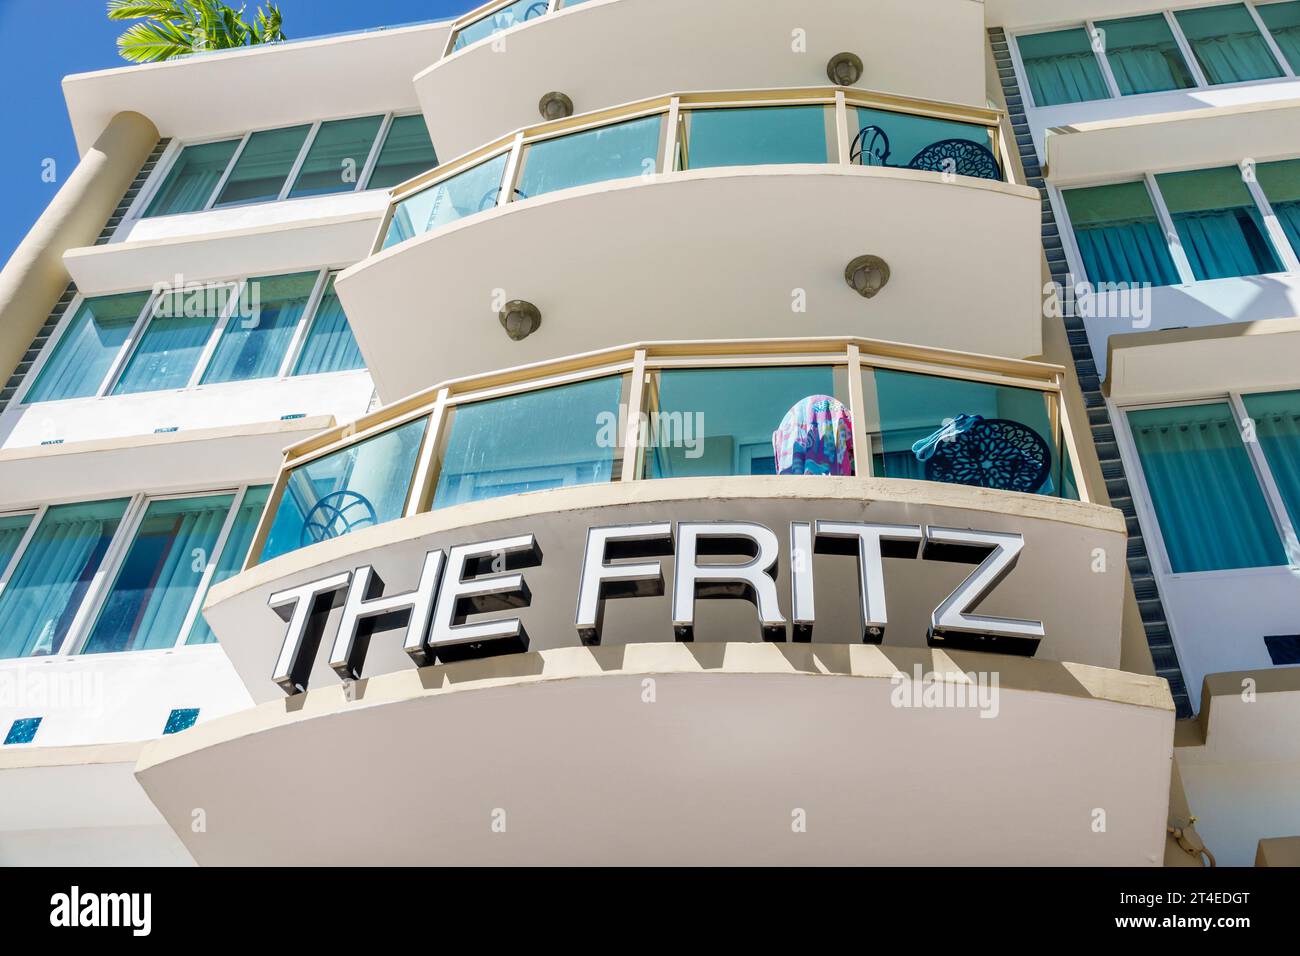 Miami Beach Florida, Außenansicht, Hotel vor dem Eingang des Gebäudes, Ocean Drive, das Fritz Hotel Schild, Hotels Motels Unternehmen Stockfoto